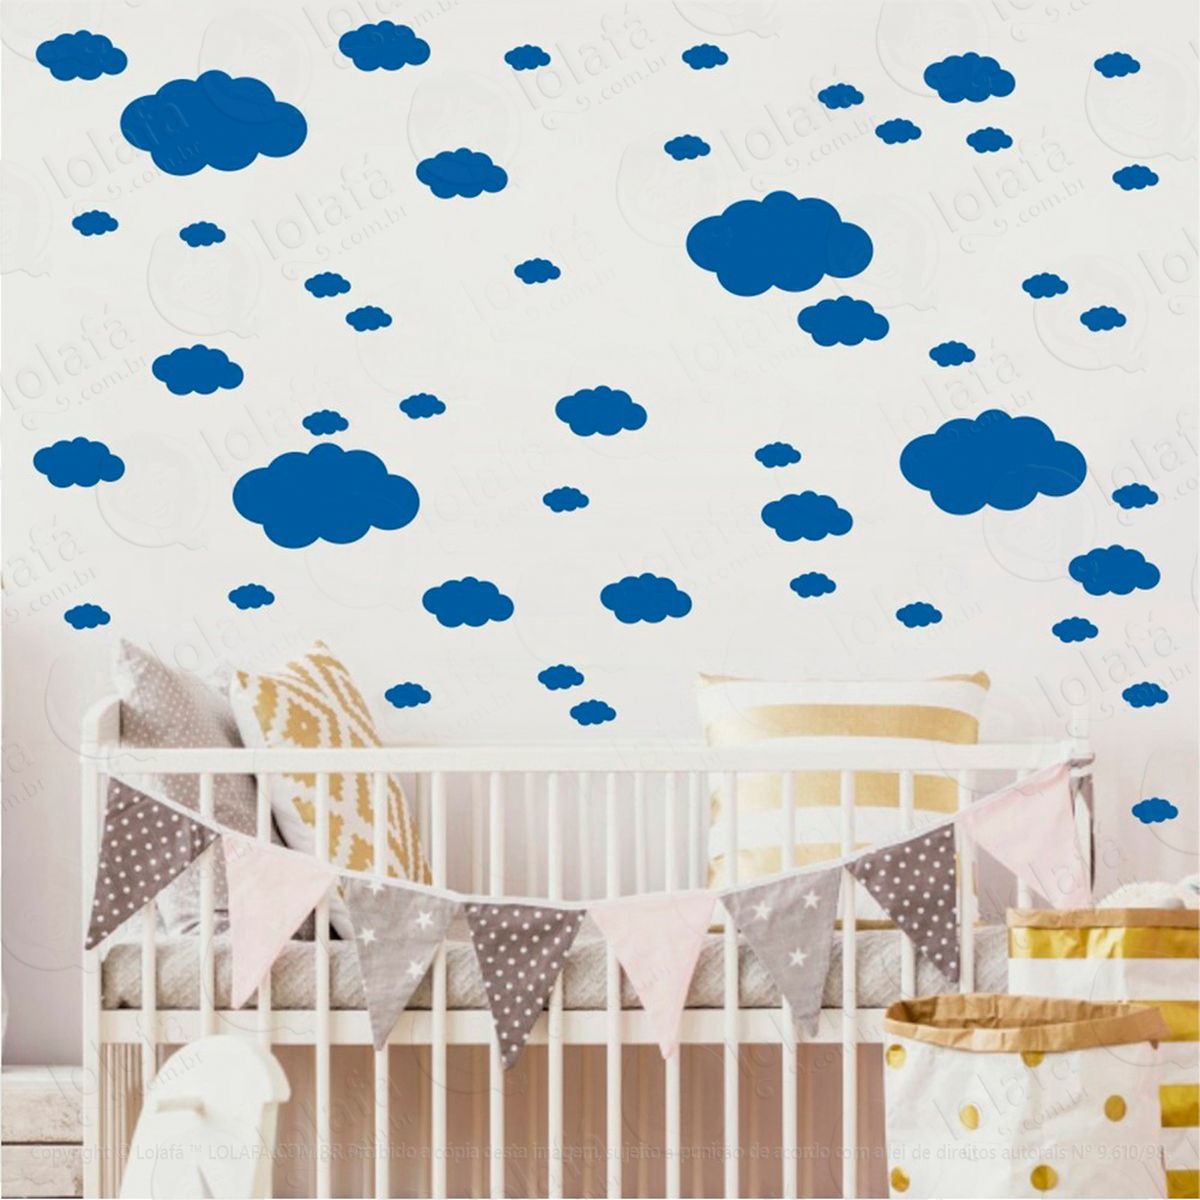 adesivos nuvens 62 peças adesivos para quarto de bebê infantil - mod:818